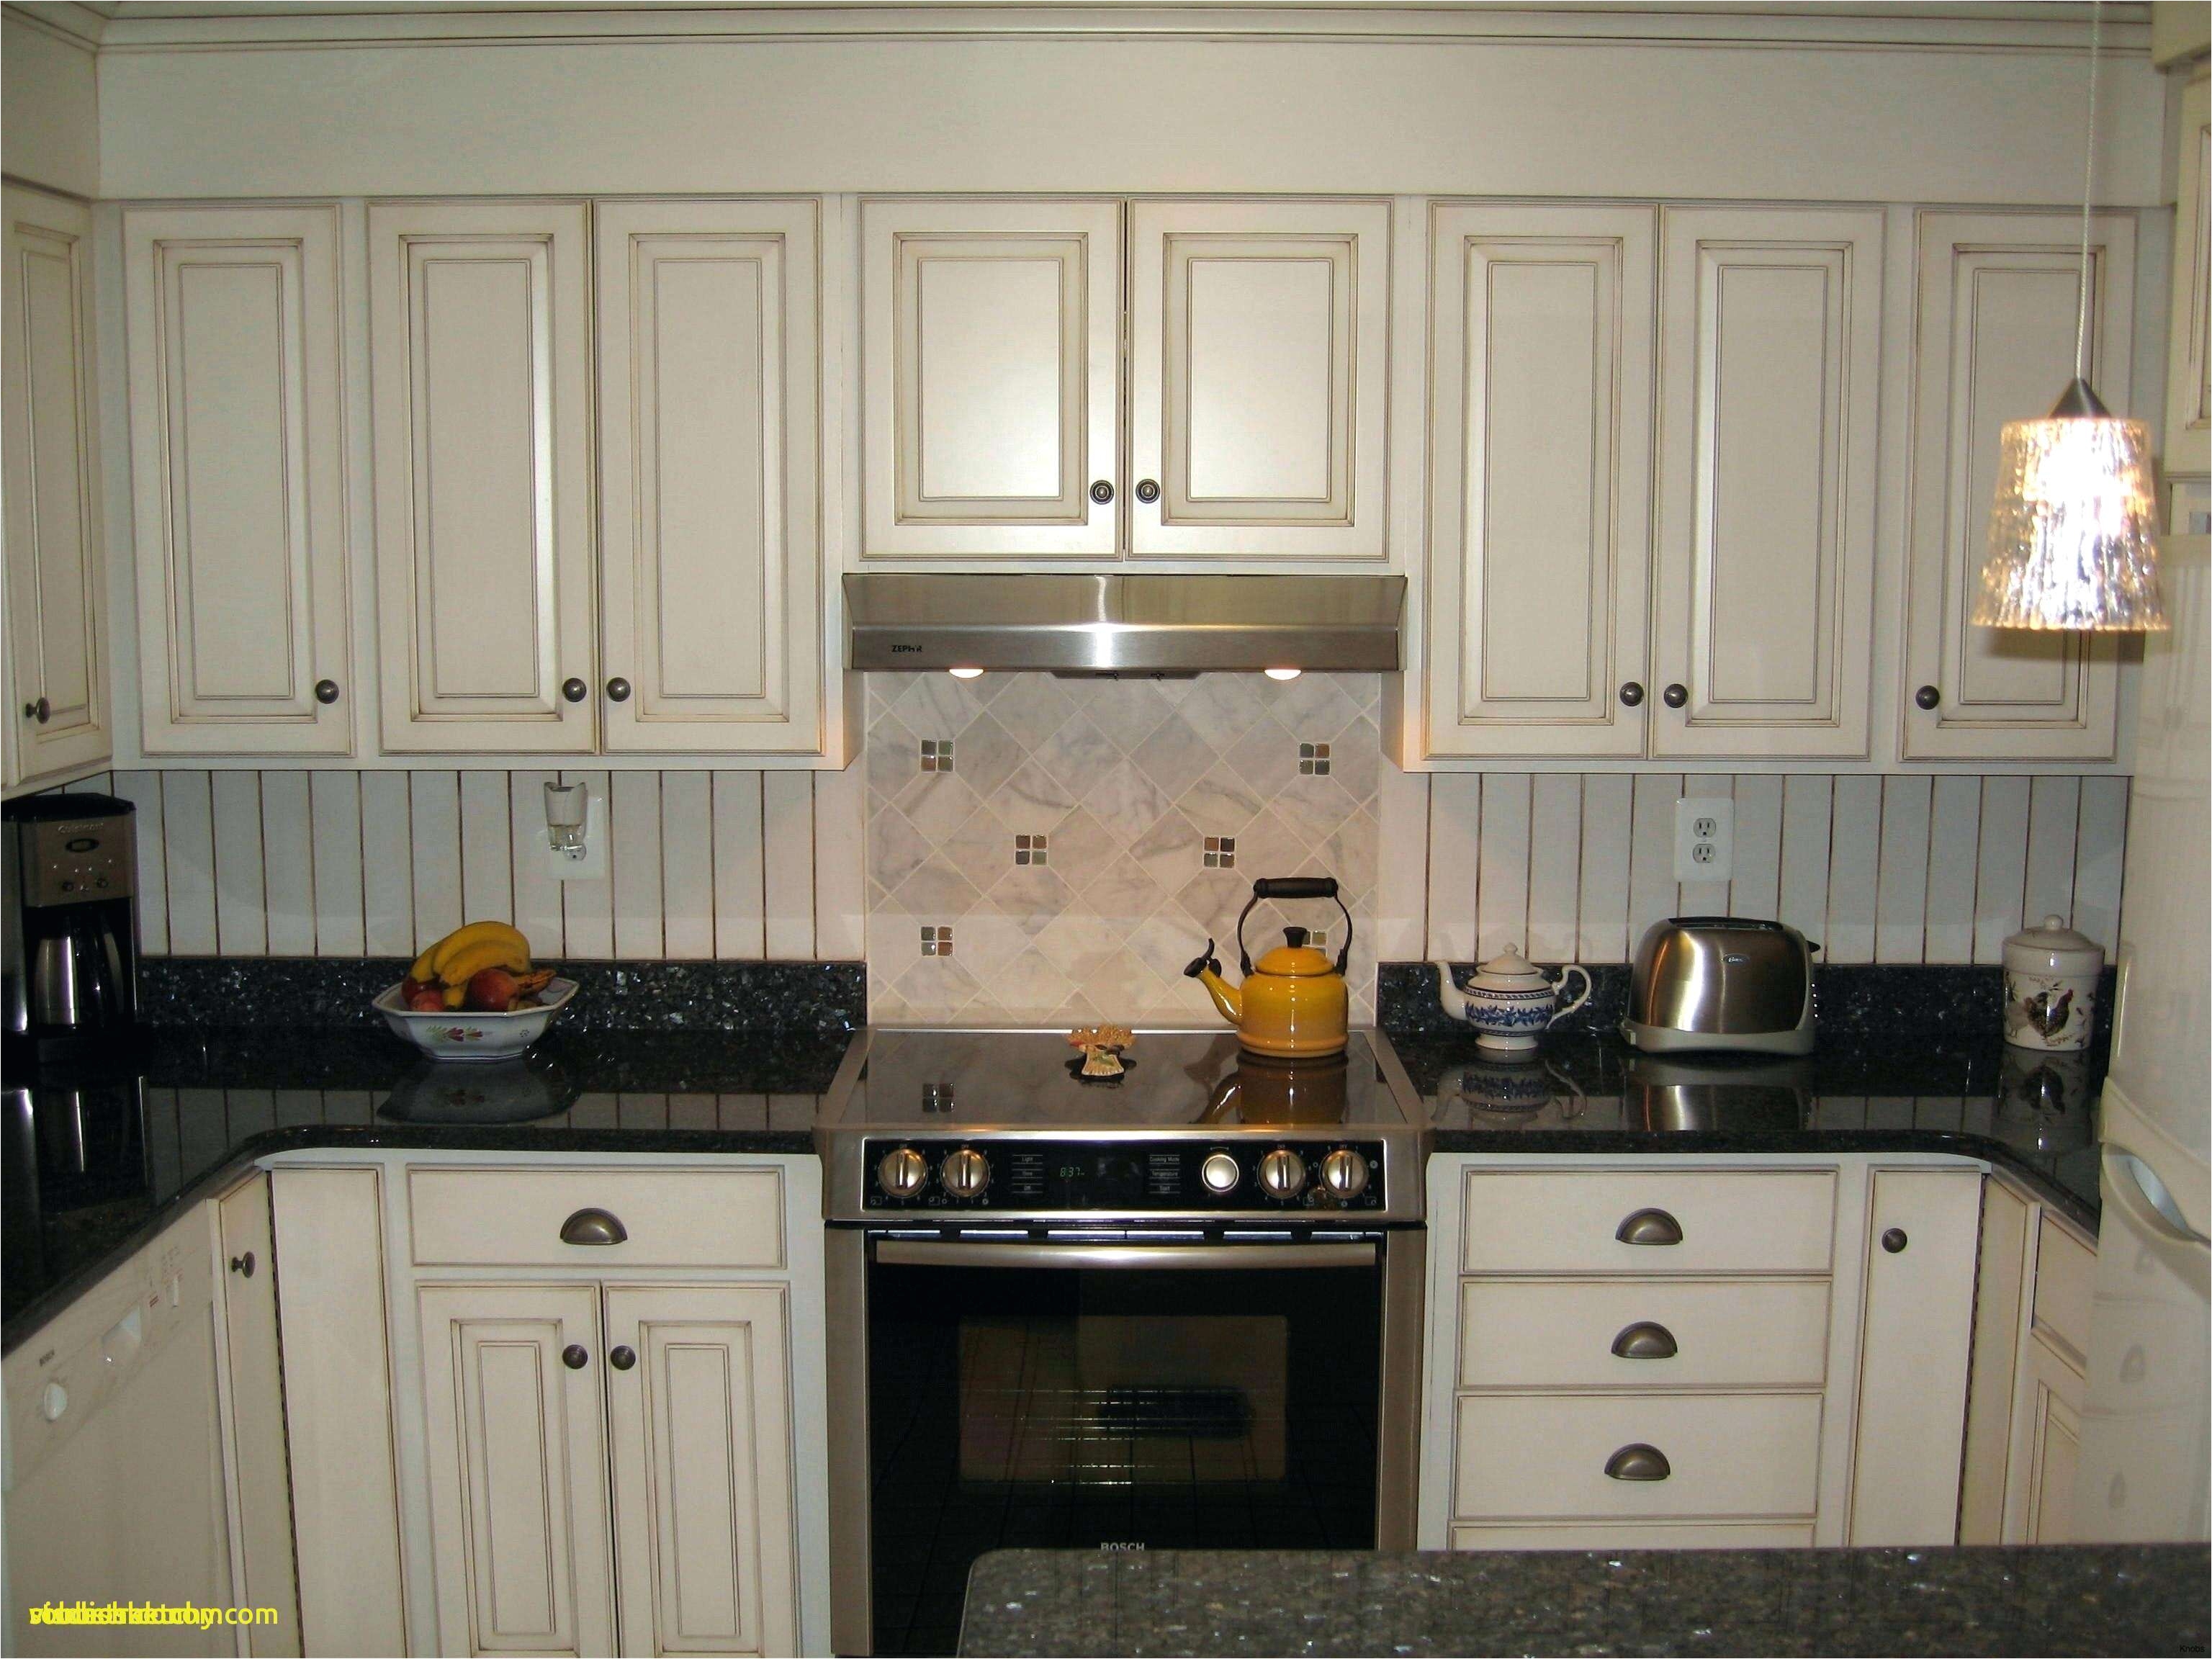 Elegant Simple Kitchen Cabinets And Kitchen Hardware Best Kitchen Hardware 0d Design Ideas Kitchen